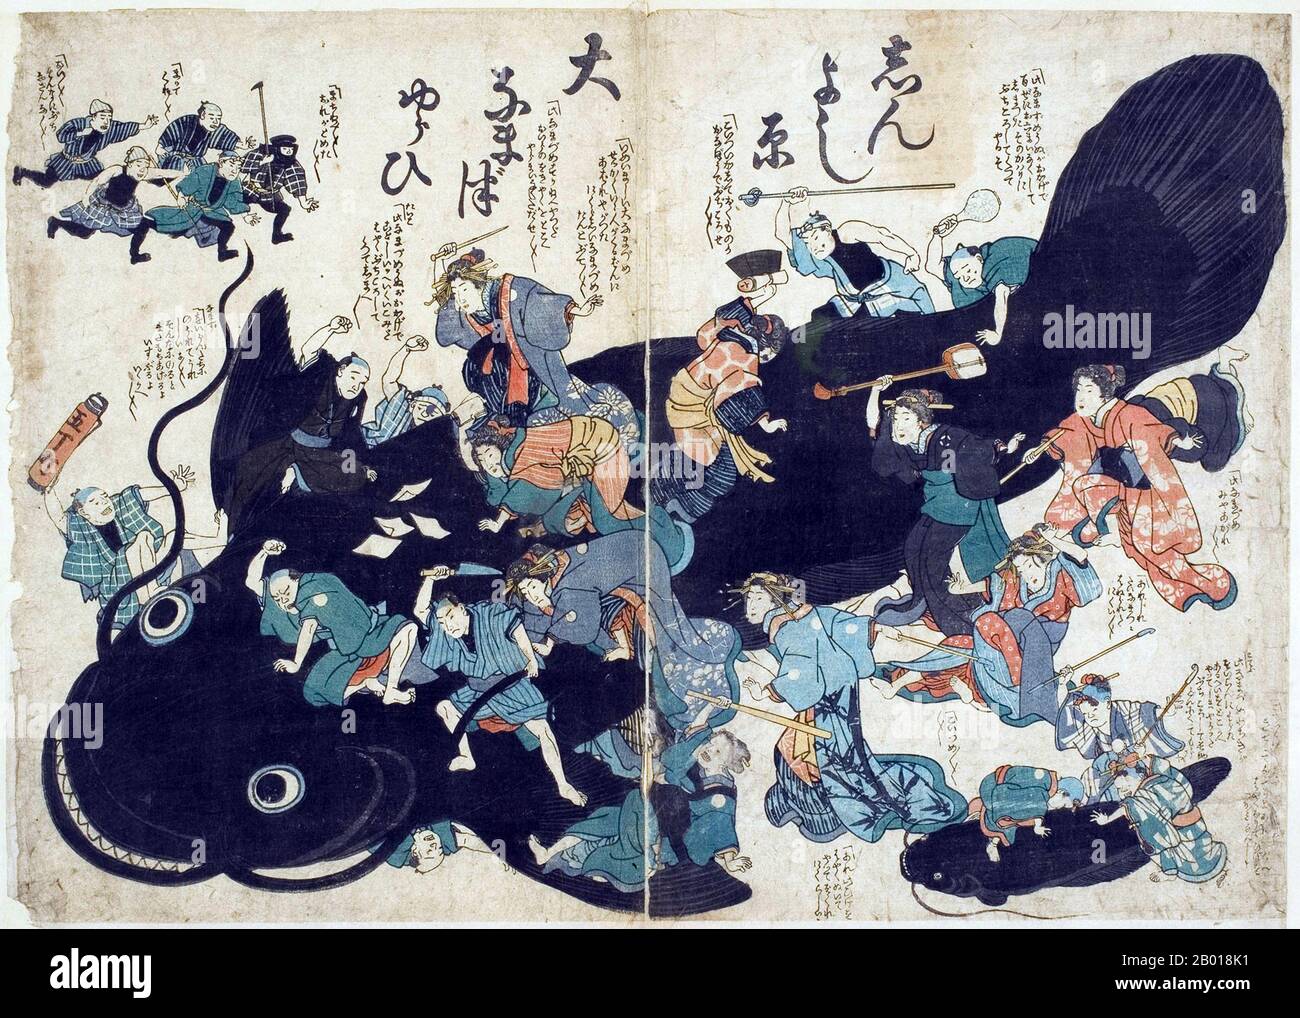 Japan: Wütende Erdbebenopfer von Ansei rächen sich an einem riesigen Wels, der für die Zerstörung verantwortlich ist. Namazu-e Holzschnitt, 1855. Das Ansei-Edo-Erdbeben von 1855, auch bekannt als das große Ansei-Erdbeben, war eine der größten Katastrophen der späten Edo-Zeit. Das Erdbeben ereignete sich um 22:00 Uhr Ortszeit am 11. November. Es hatte ein Epizentrum in der Nähe von Edo (heute Tokio), was in der Region Kantō durch die Erschütterungen und die anschließenden Brände erhebliche Schäden verursachte, mit einer Todesrate von etwa 7.000 Menschen. Das Erdbeben löste auch einen Tsunami aus. Stockfoto